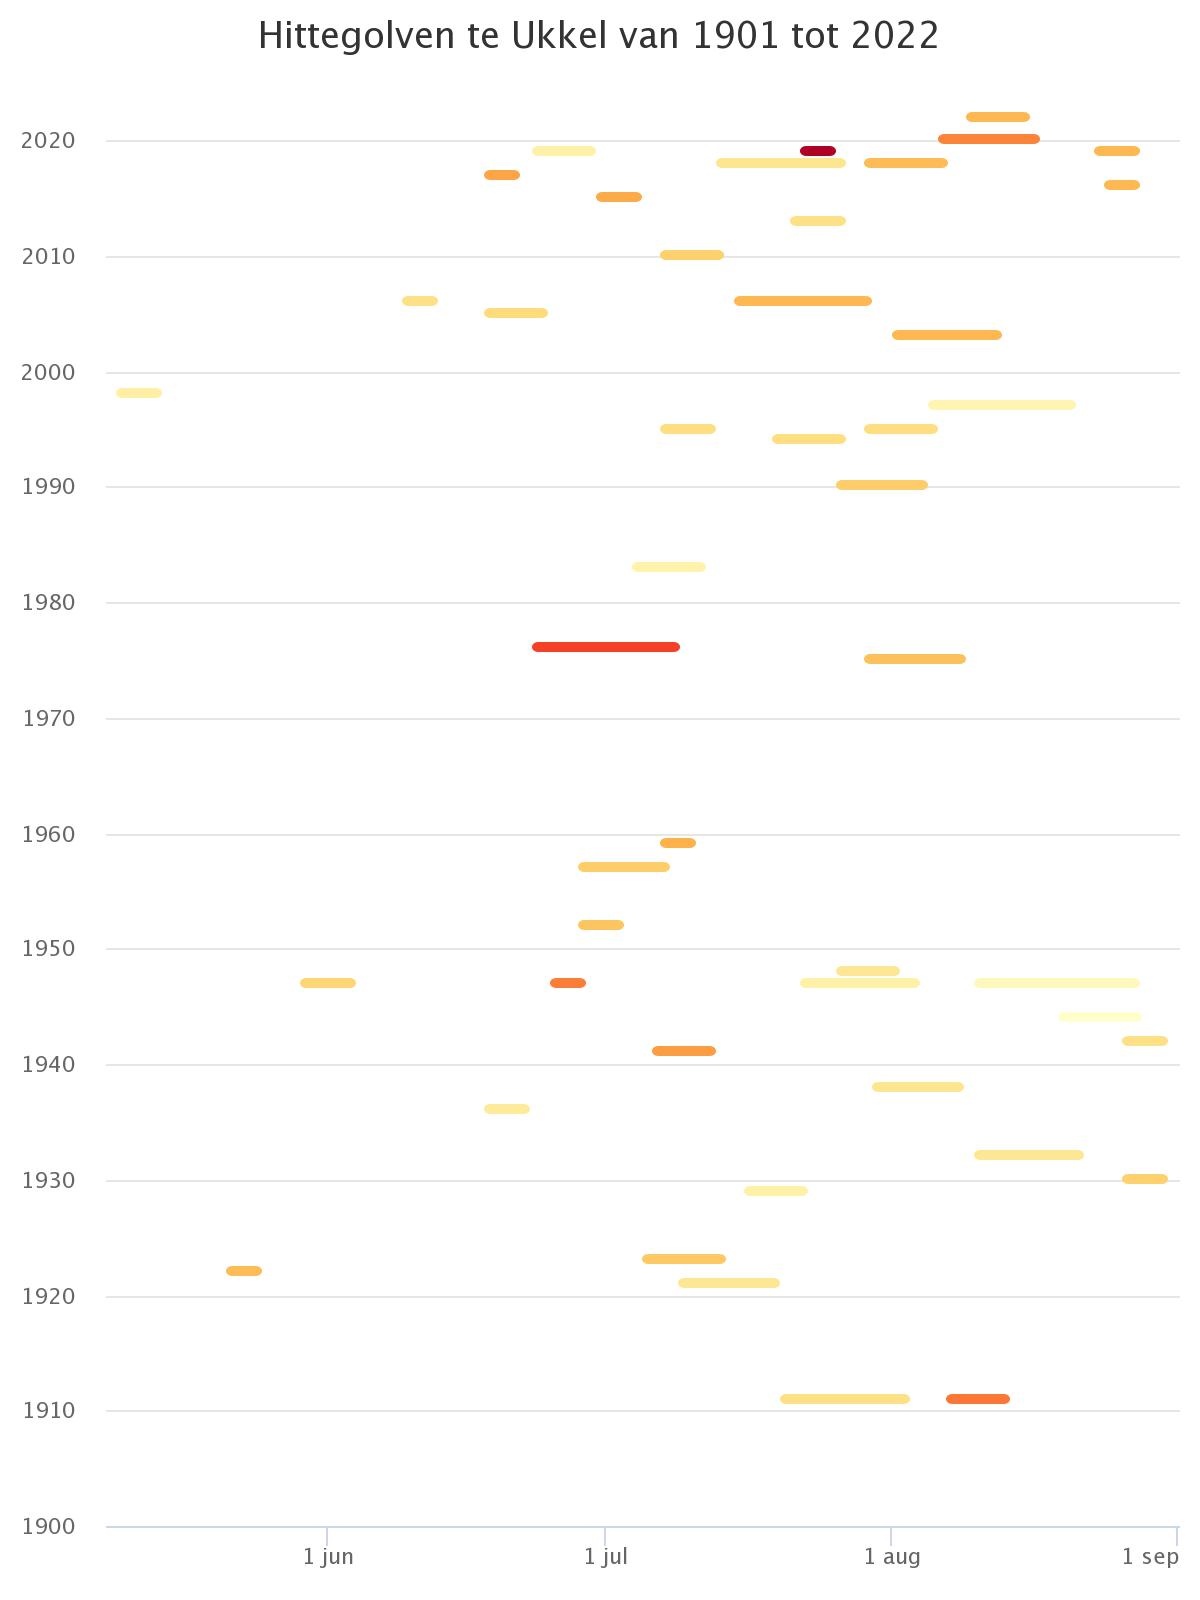 De figuur geeft een overzicht van de hittegolven waargenomen in Ukkel sinds 1901. Elke hittegolf wordt voorgesteld door een horizontaal segment uitgestrekt over de periode van het jaar waarin deze plaatsvond. De kleur van elk segment is in functie van de intensiteit van de hittegolf (gedefinieerd door het gemiddelde van de maximumtemperaturen tijdens de hittegolf).